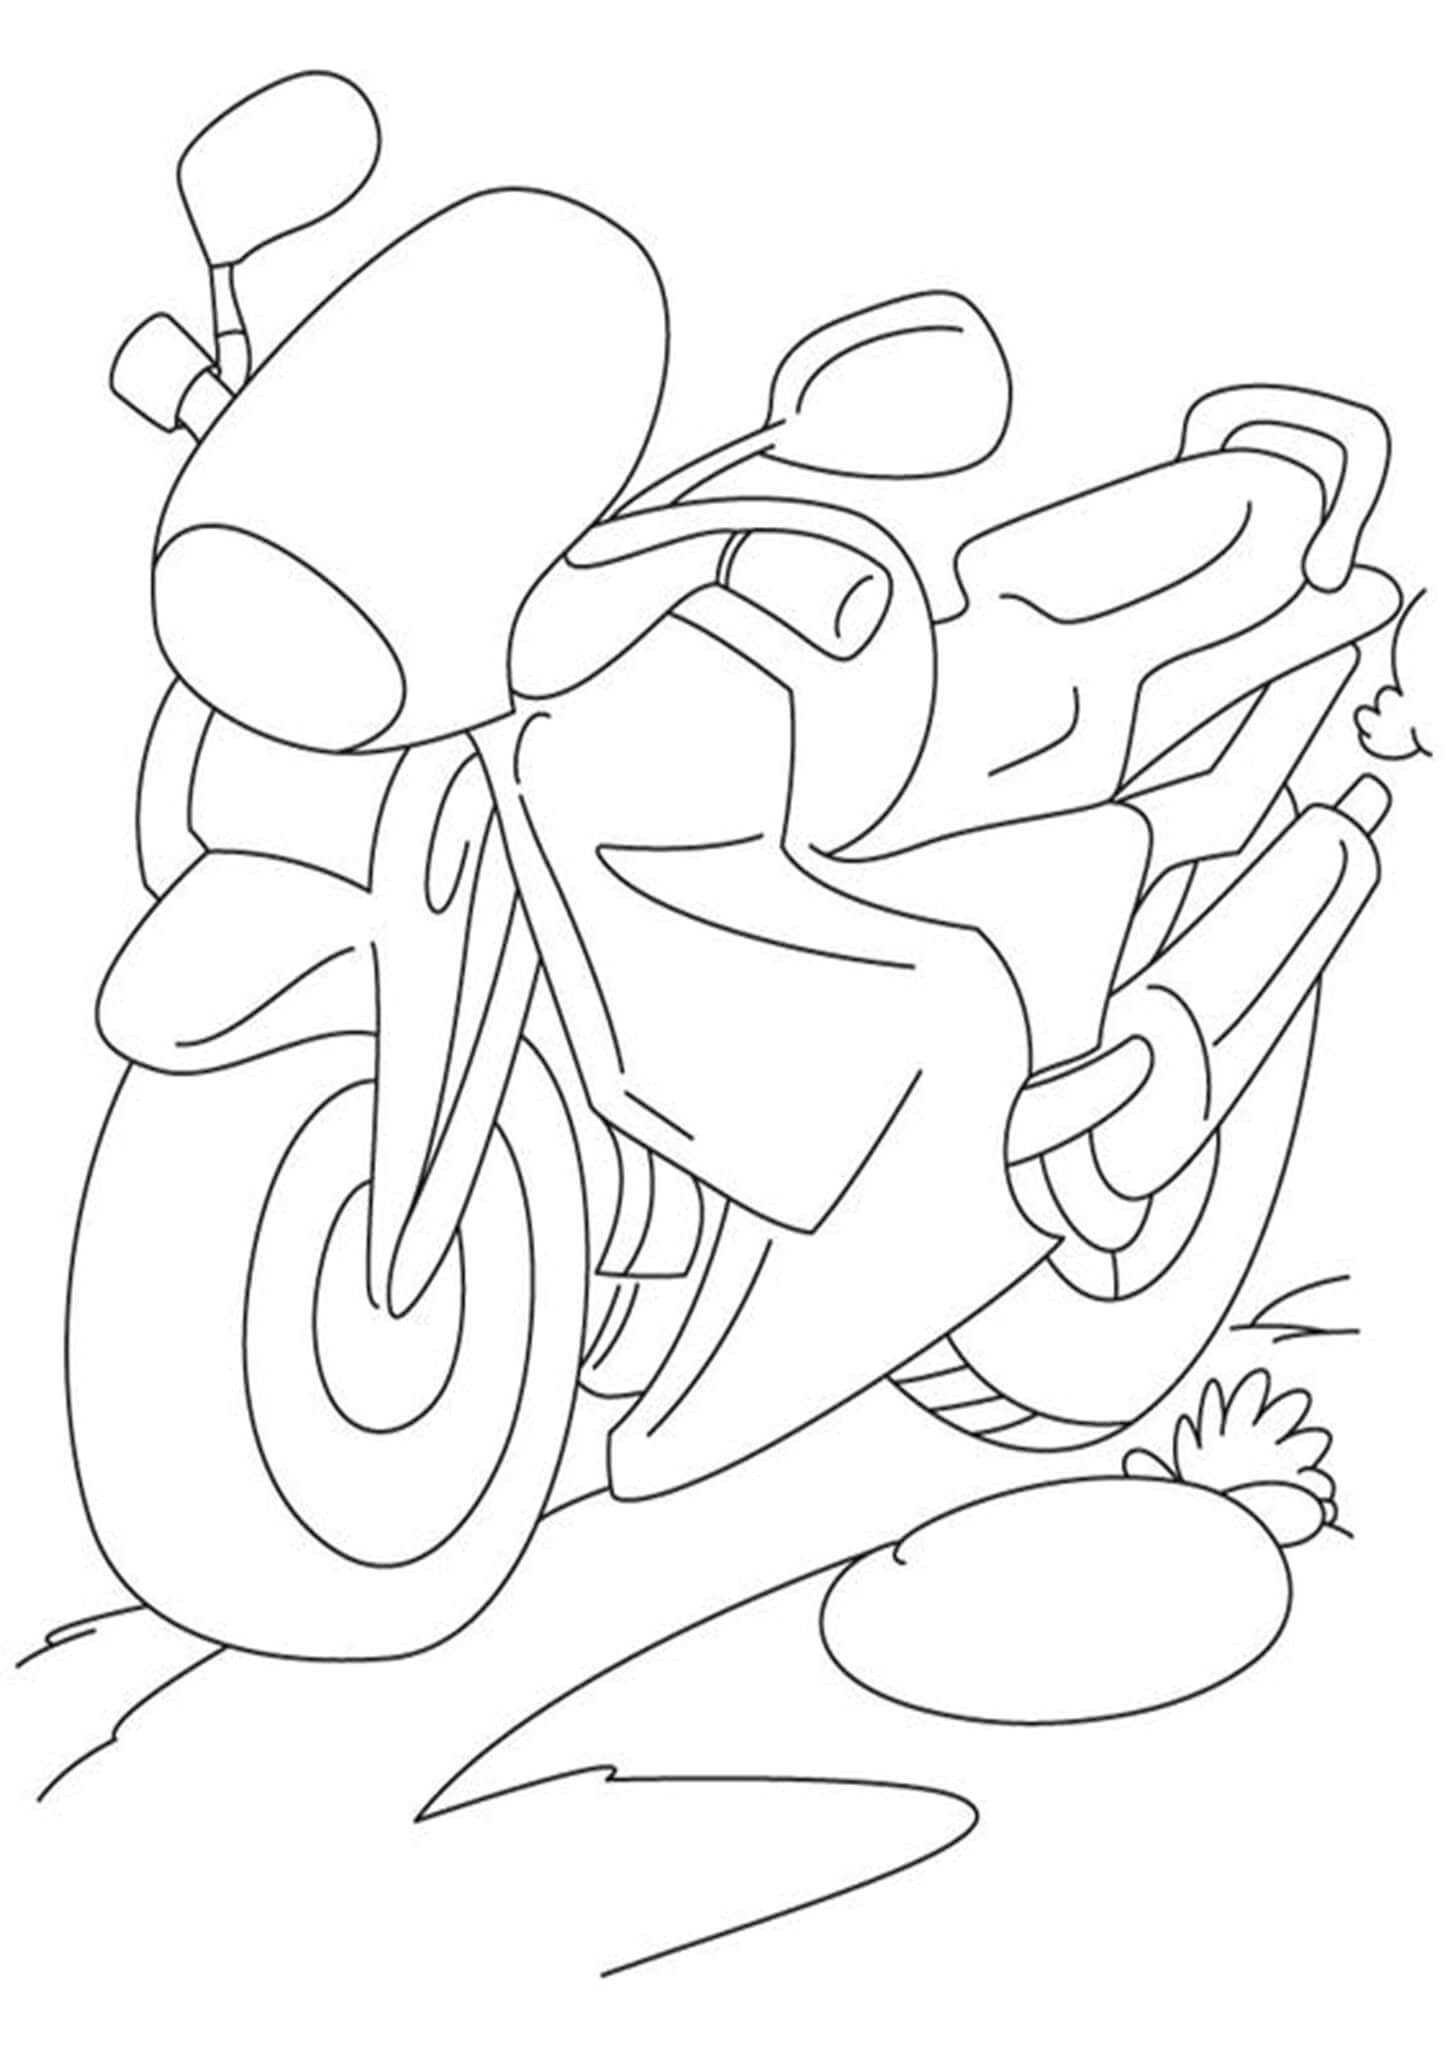 Разрисовка мотоцикла